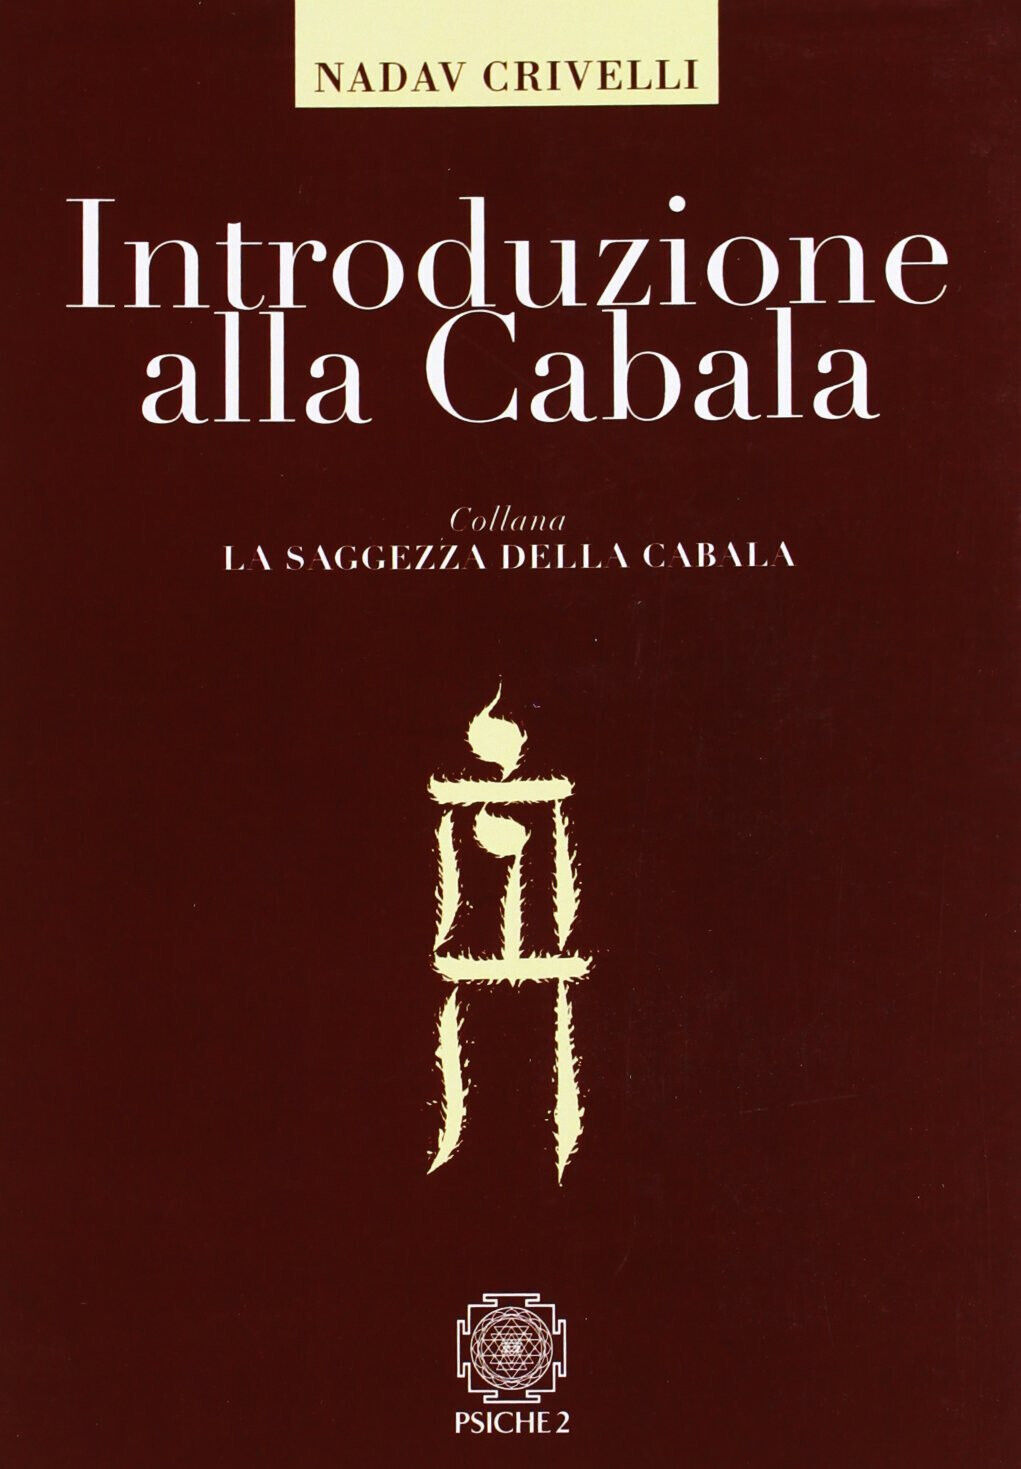 Introduzione alla cabala - AA.VV. - Psiche 2, 2008 libro usato